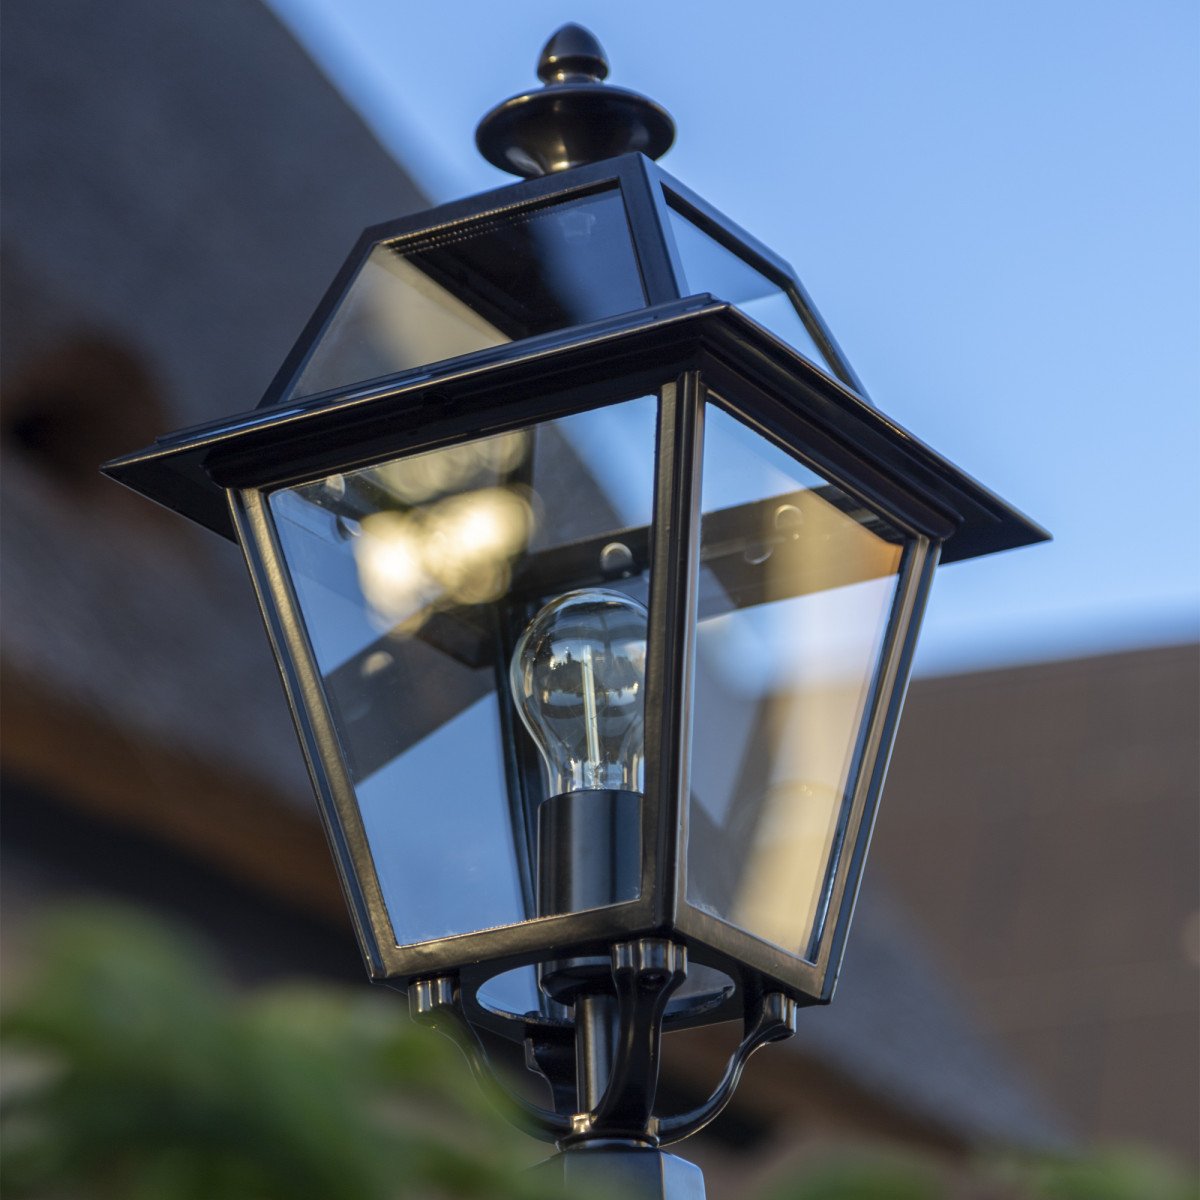 Lampe de jardin sur pied Mechelen (7212) de KS Lighting avec lanterne carrée